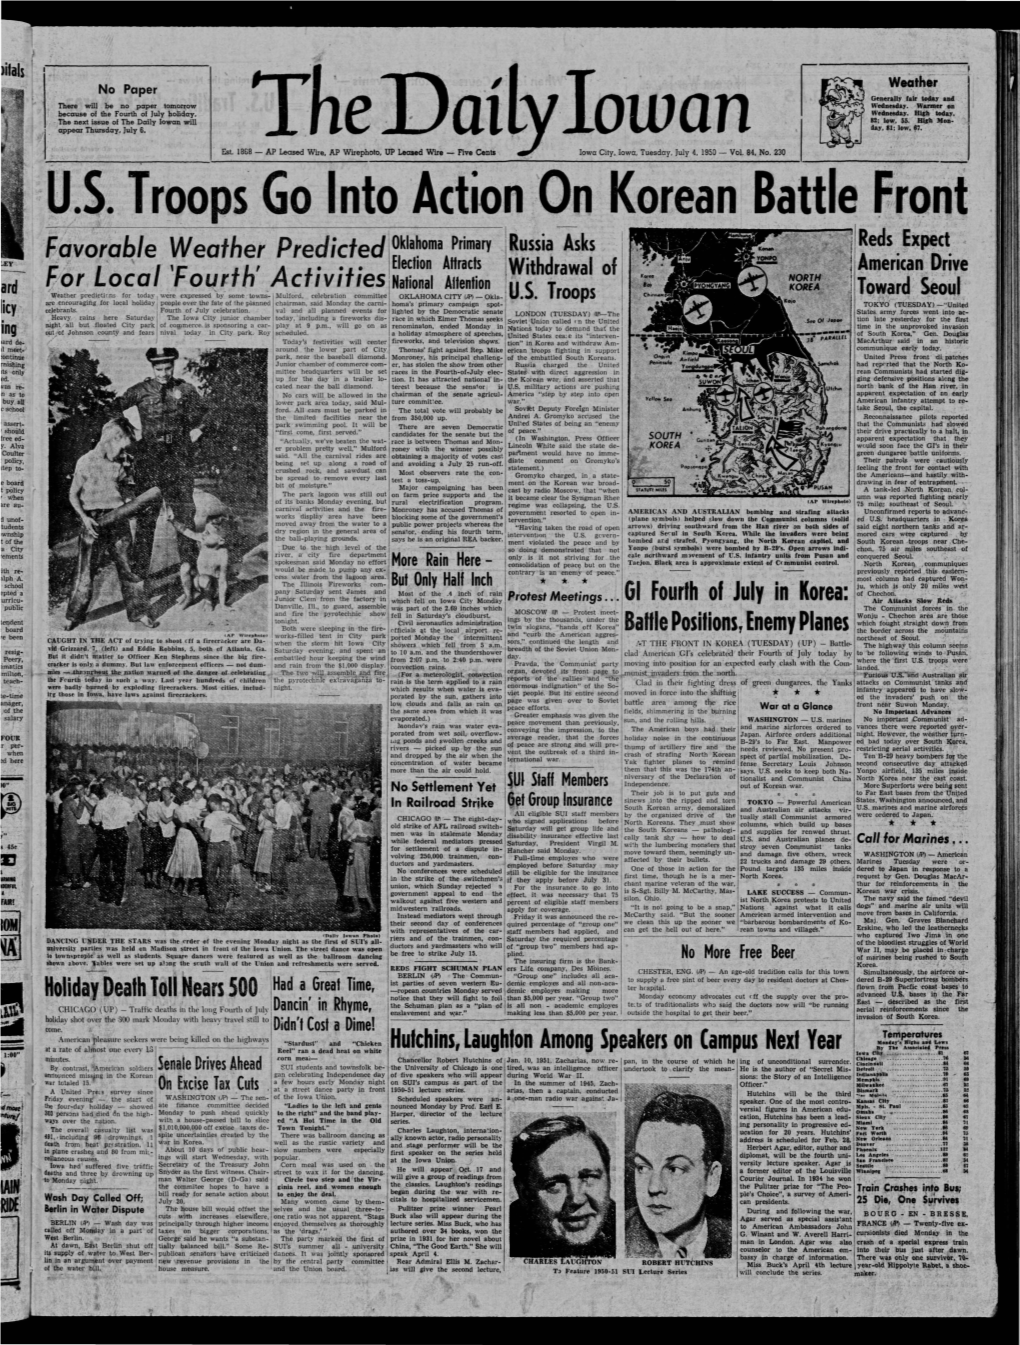 Daily Iowan (Iowa City, Iowa), 1950-07-04